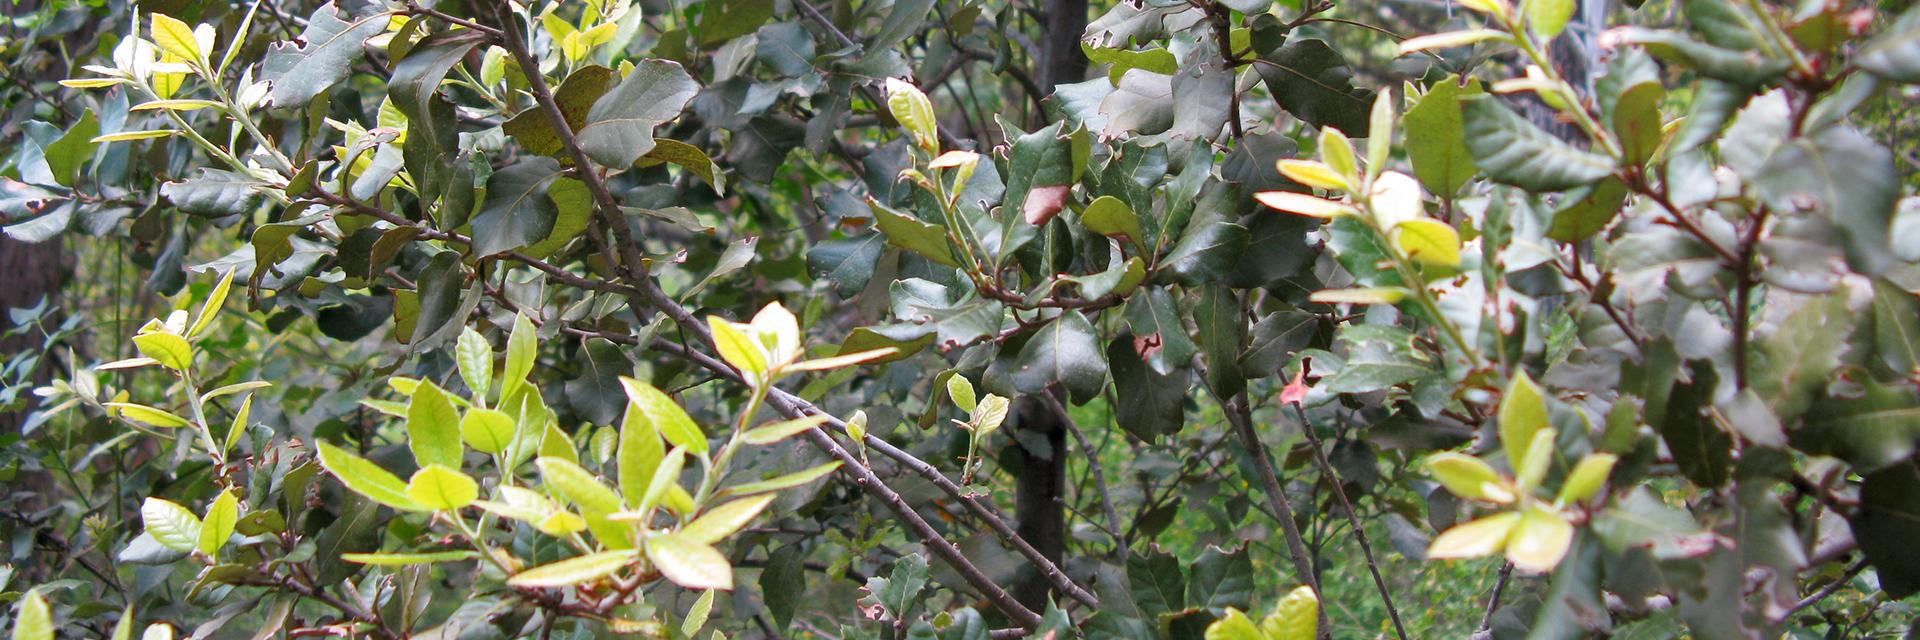 Mantar meşesi (Quercus suber L.)